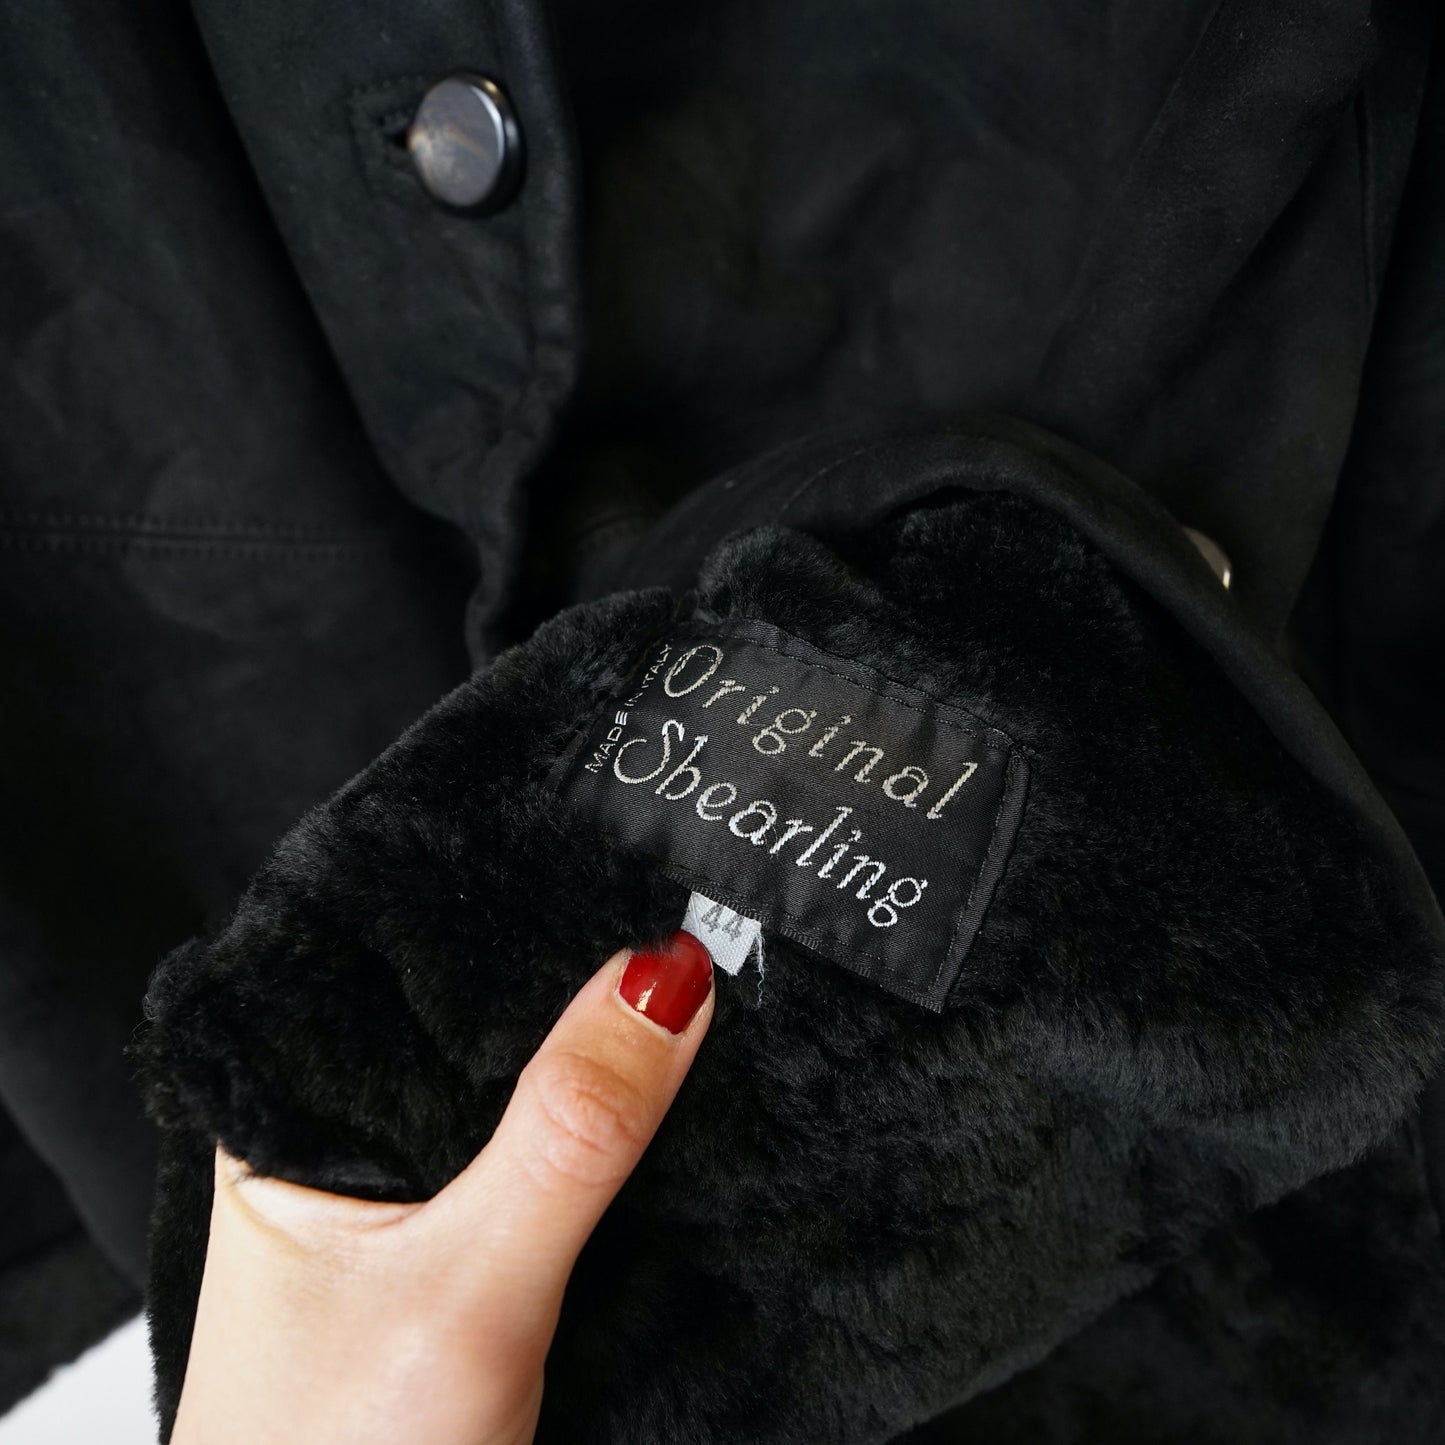 Vintage Shearling Jacket Size L black